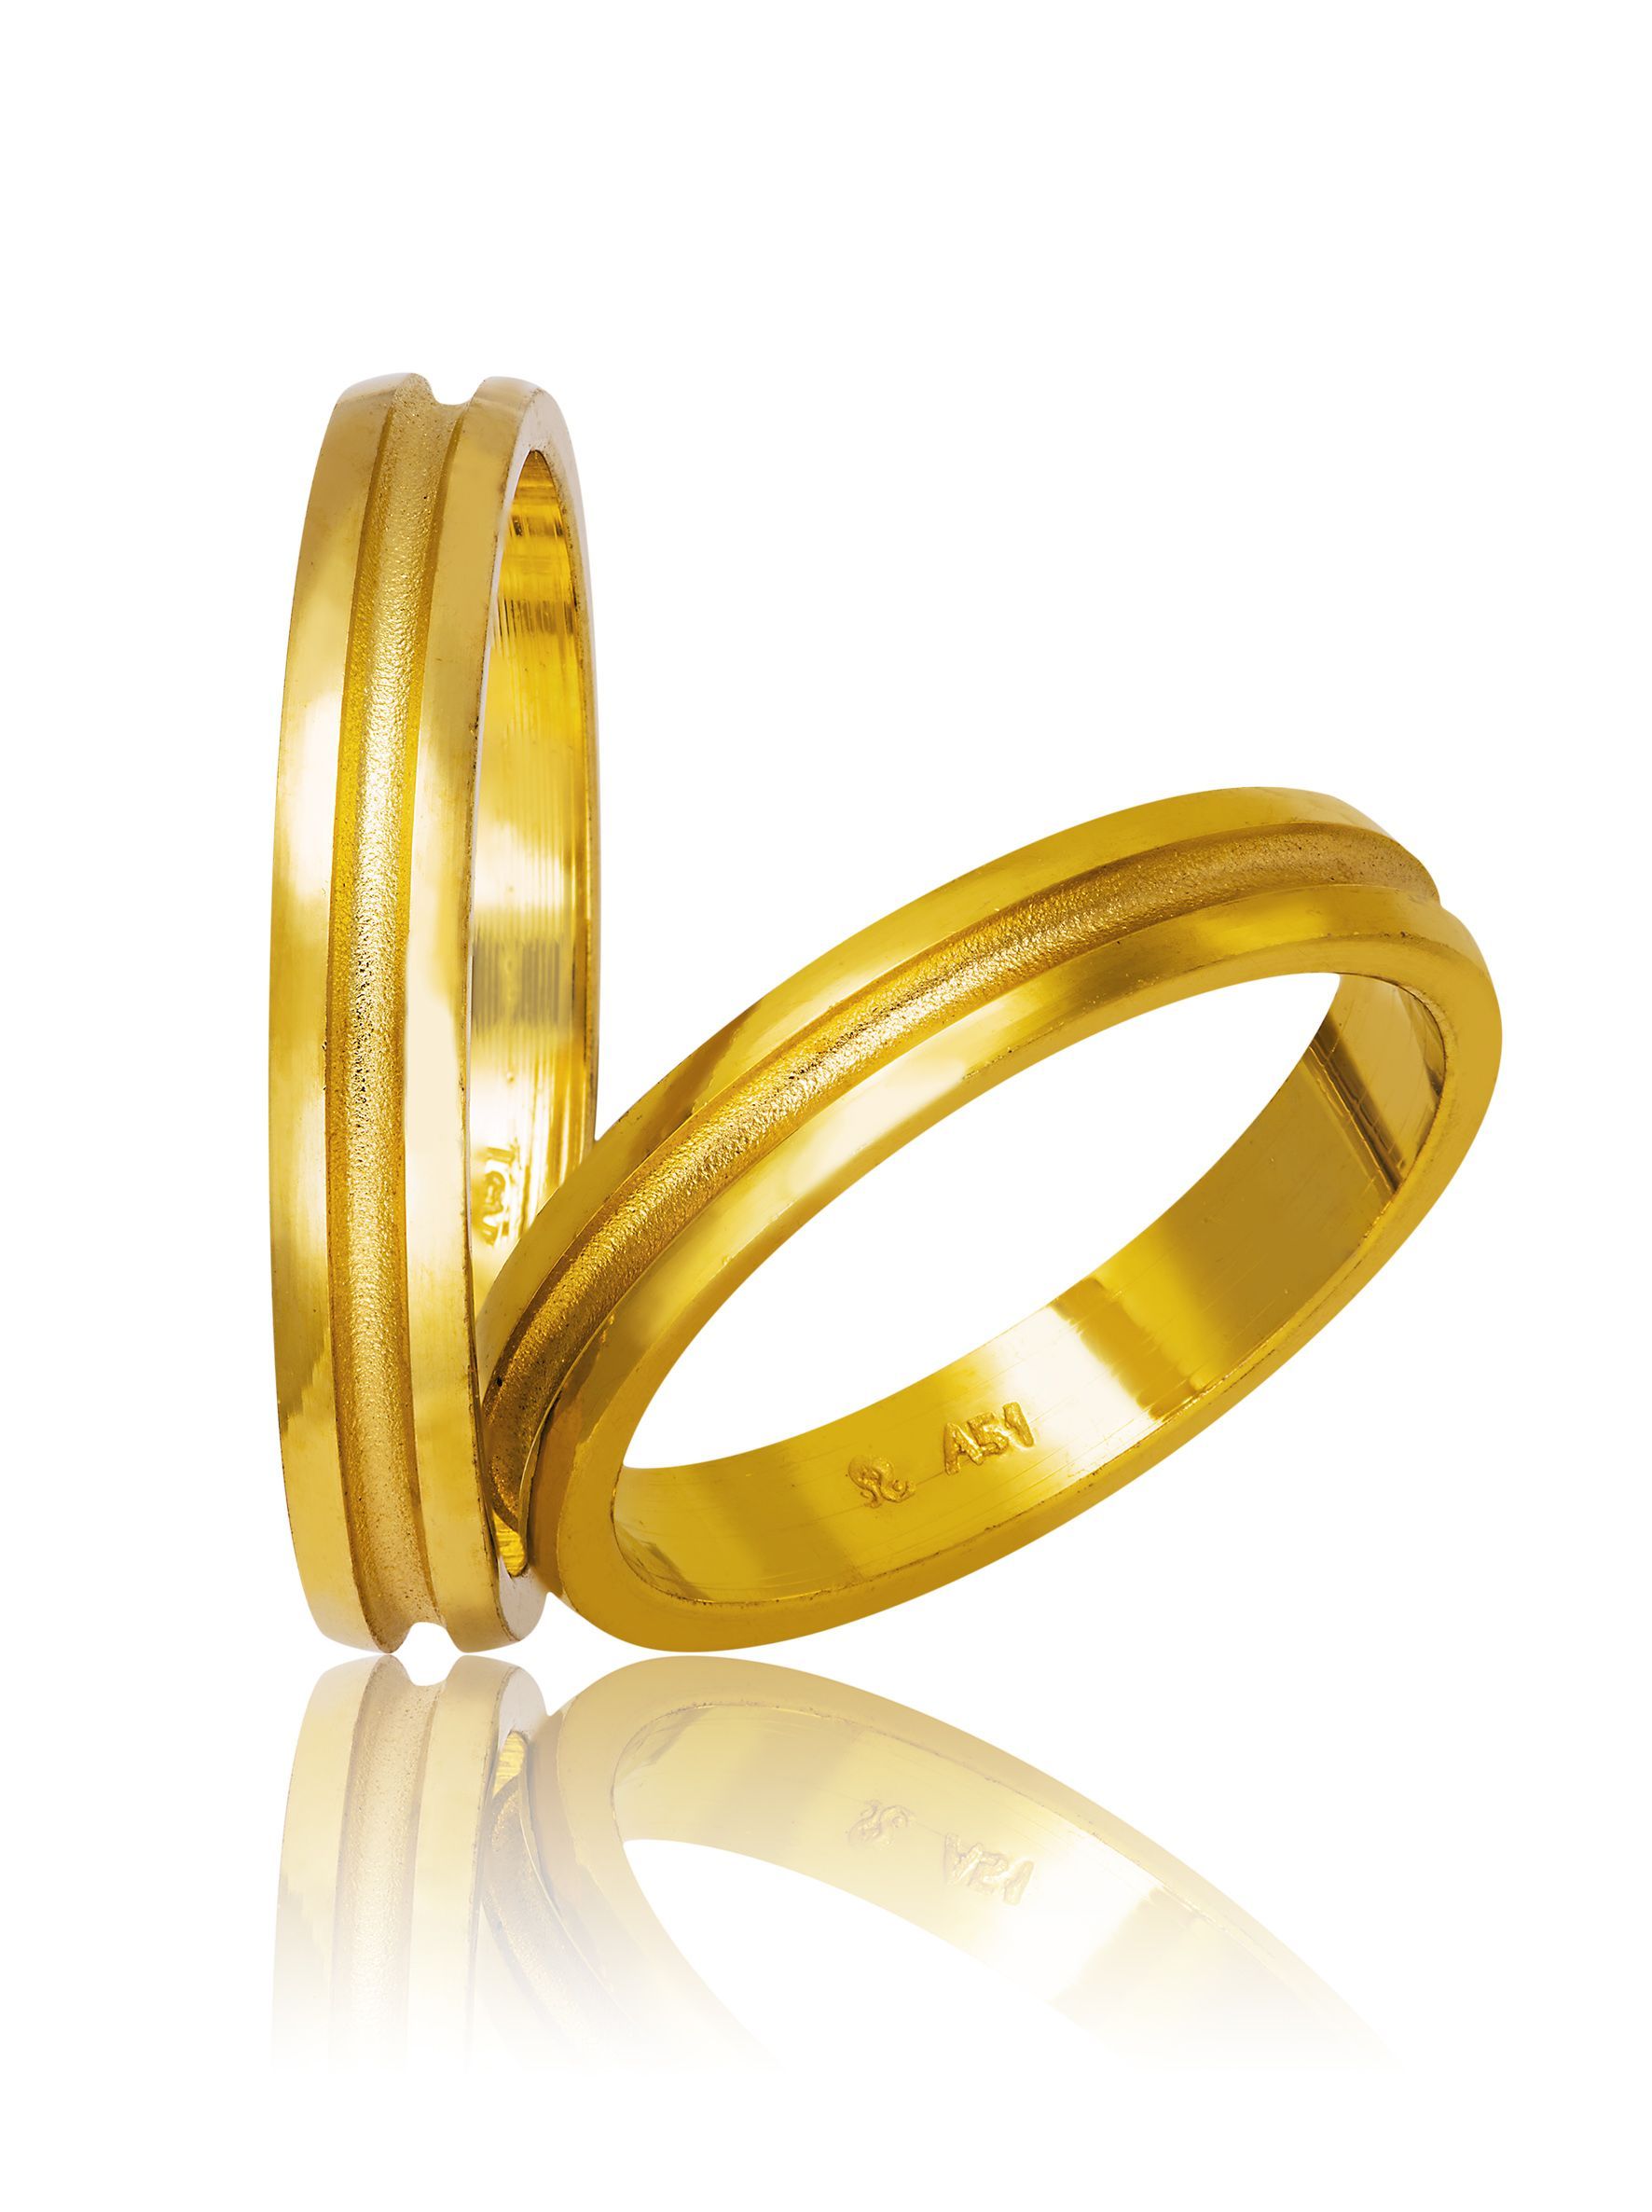 Golden wedding rings (code 750)